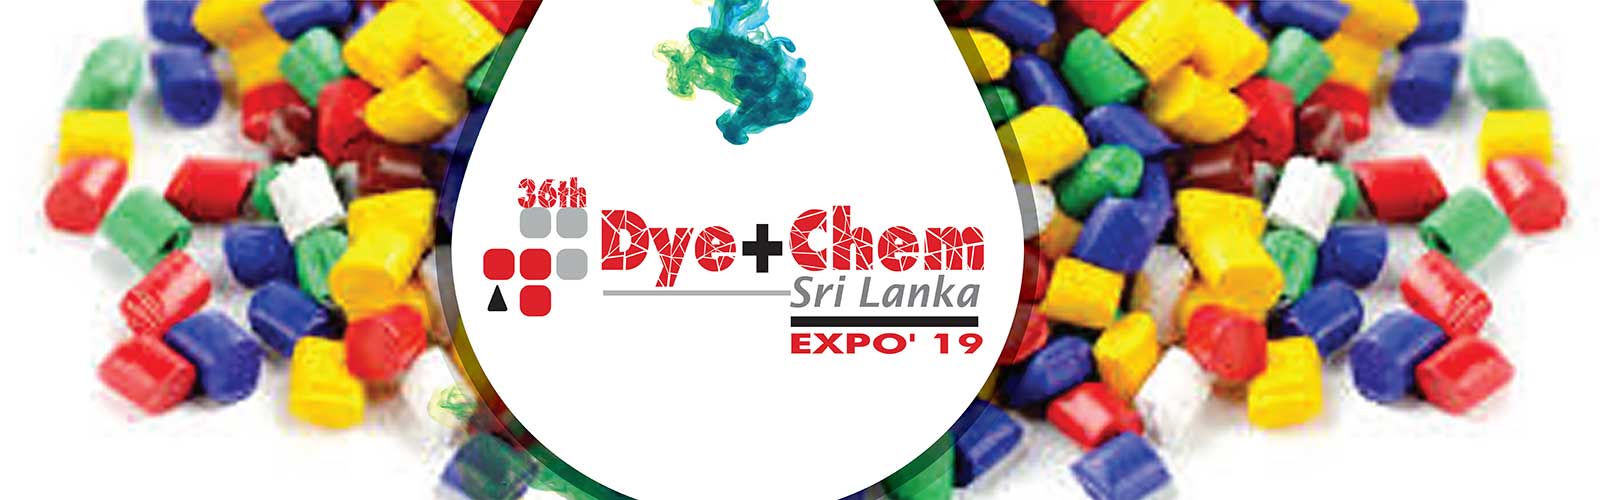  36th  Dye+Chem Sri Lanka 2019 International Expo